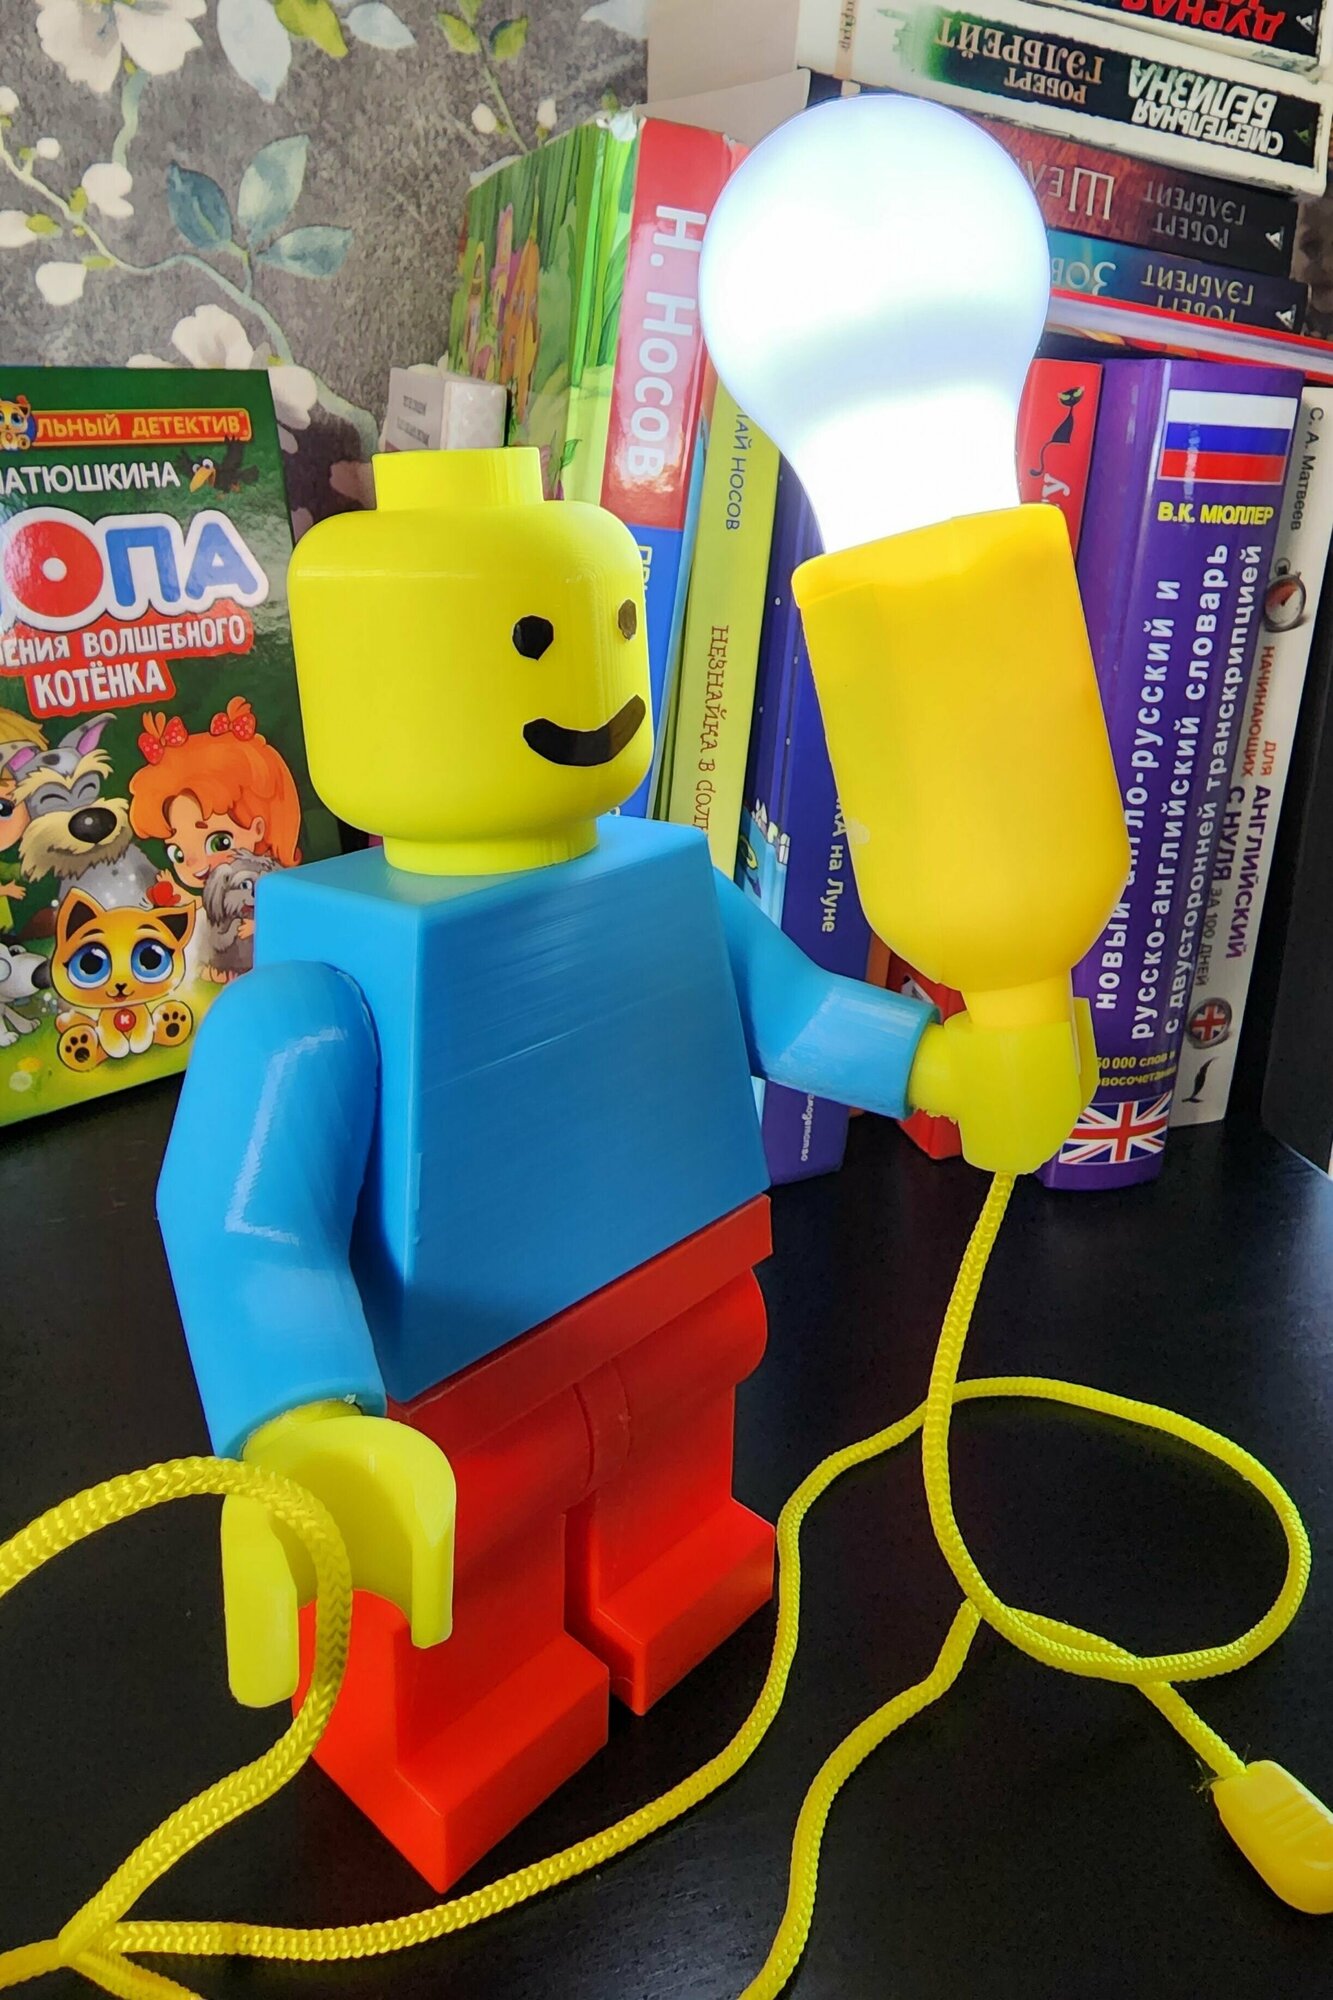 Лампа - ночник: 3 в 1 (лампа, игрушка, фонарик) в виде LEGO/Лего человечка - фотография № 7